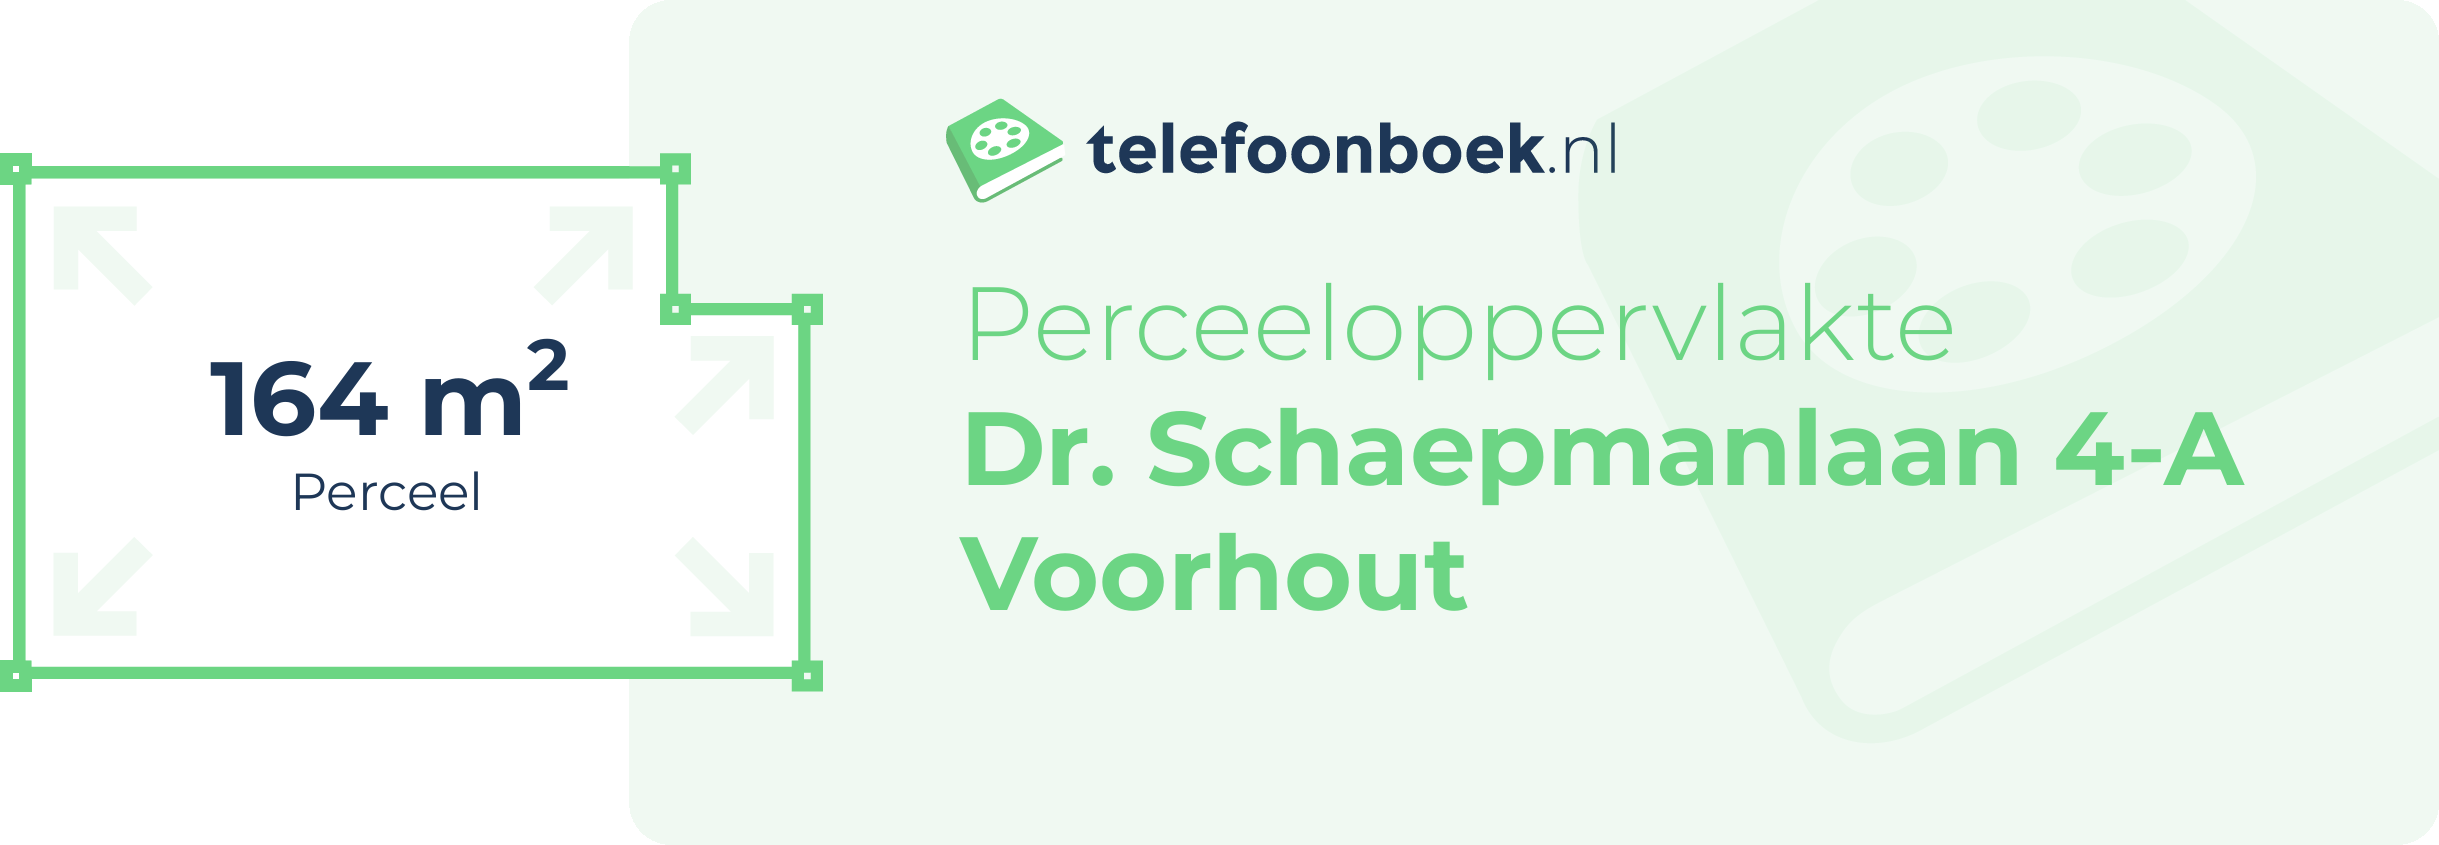 Perceeloppervlakte Dr. Schaepmanlaan 4-A Voorhout